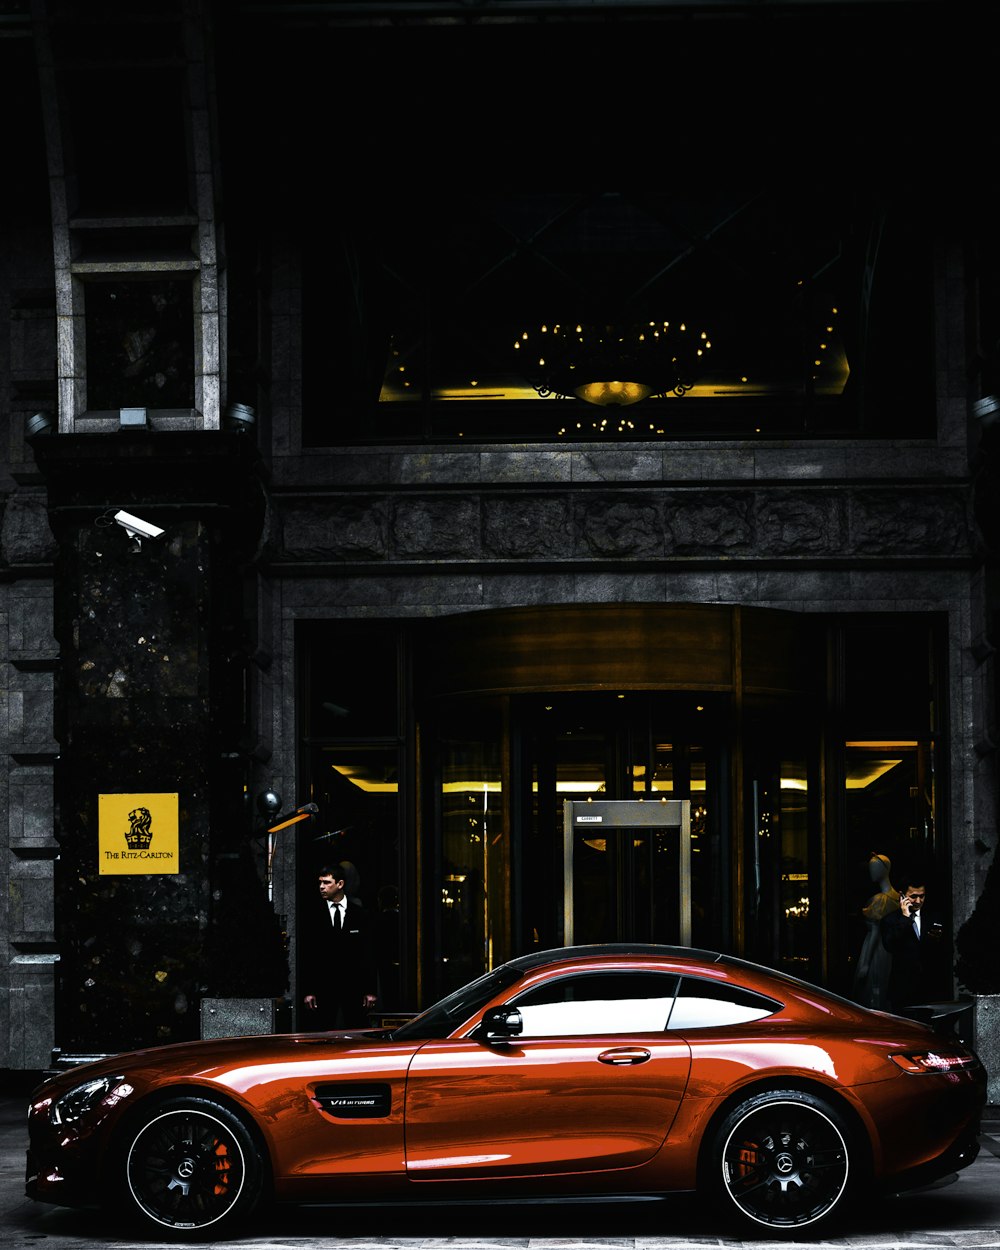 coupé rossa parcheggiata di fronte all'edificio nero e grigio durante il giorno